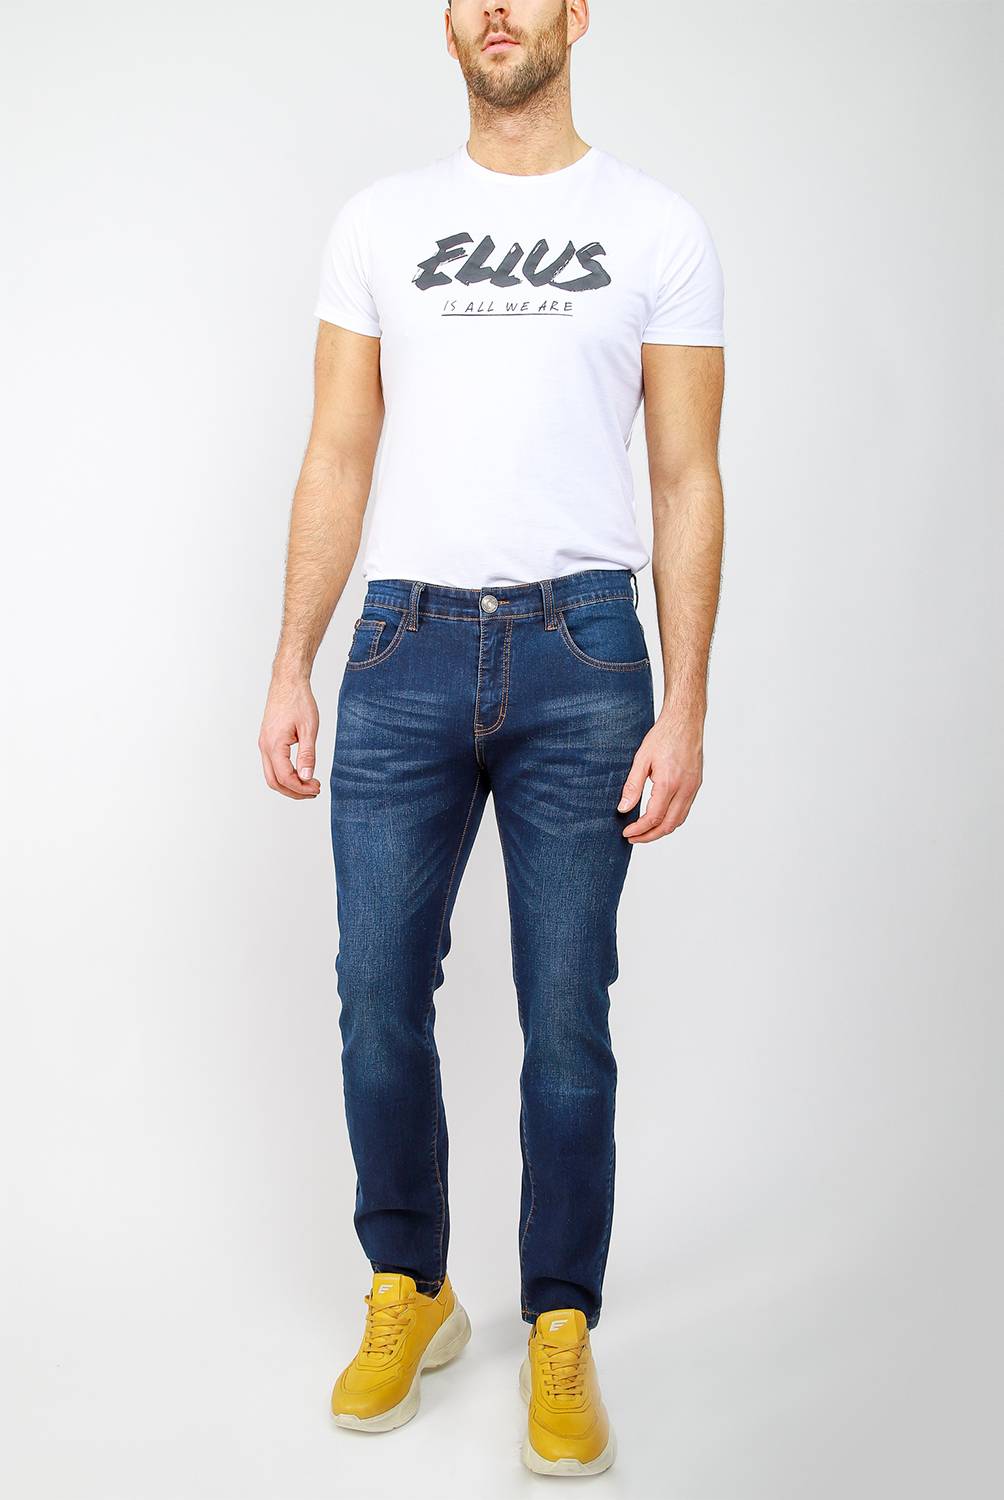 ELLUS NEGOCIO ESPECIAL - Jeans Skinny Fit Hombre Ellus